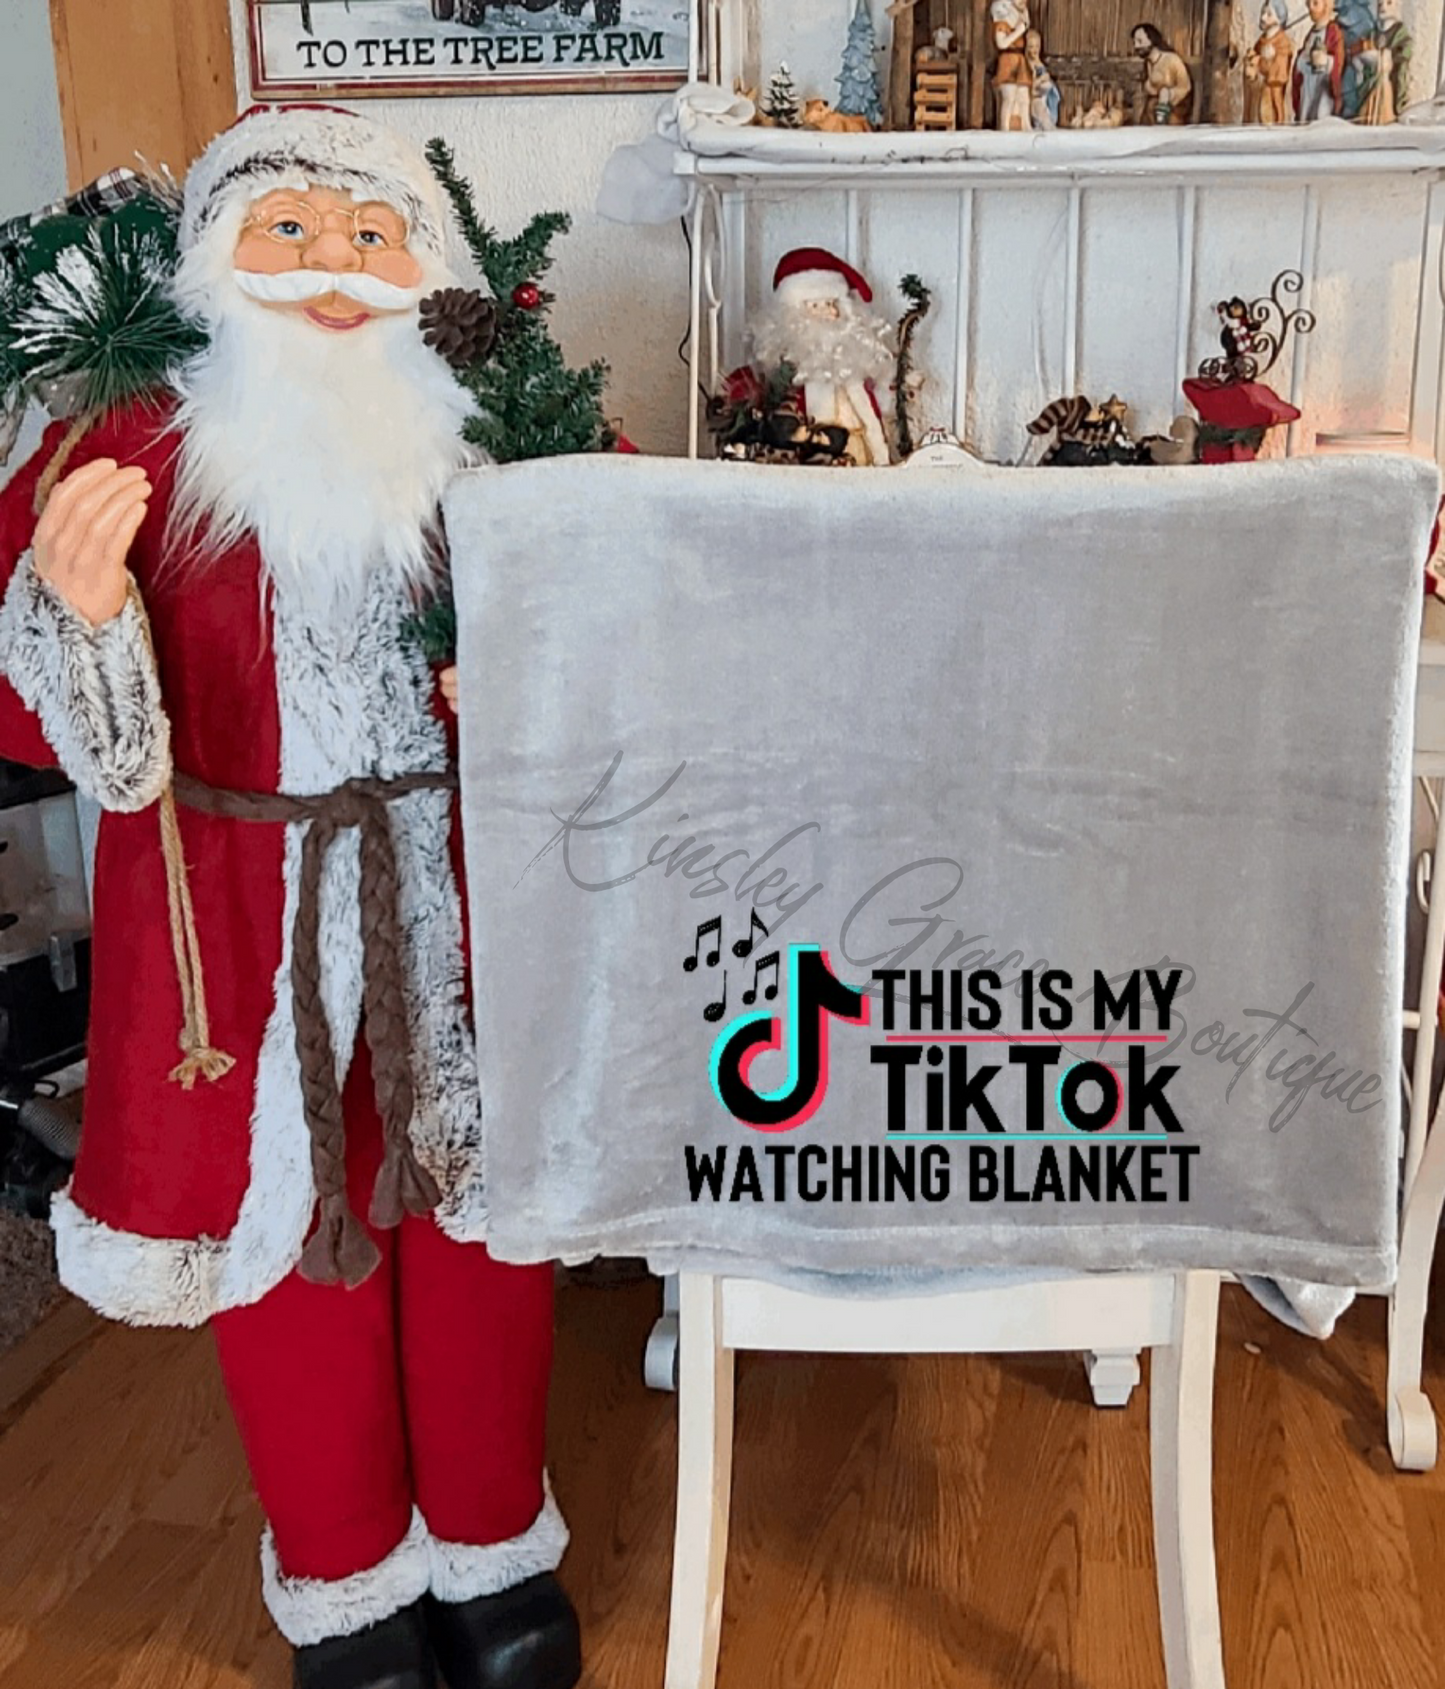 Tik tok watching blanket